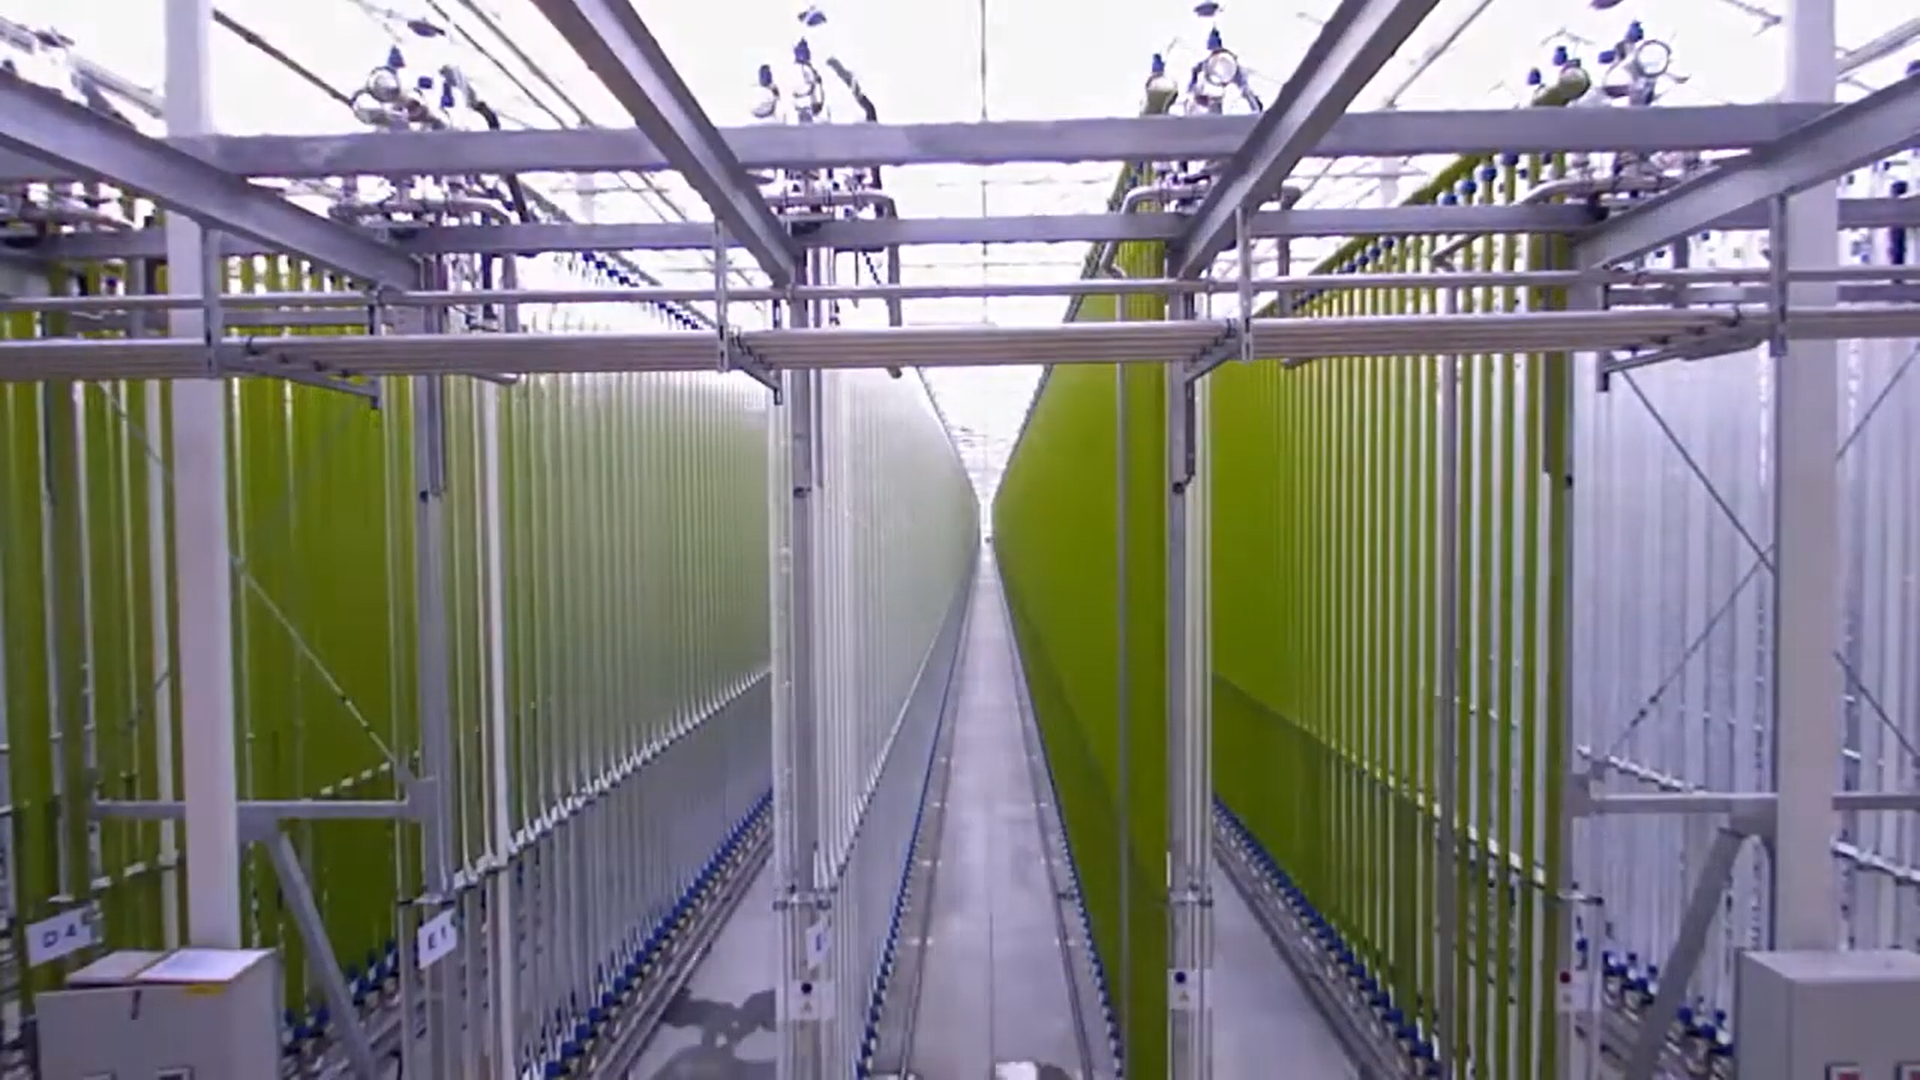 Assista a um vídeo que registra os intervalos de tempo da construção da planta de cultivo de microalgas da Jongerius ecoduna